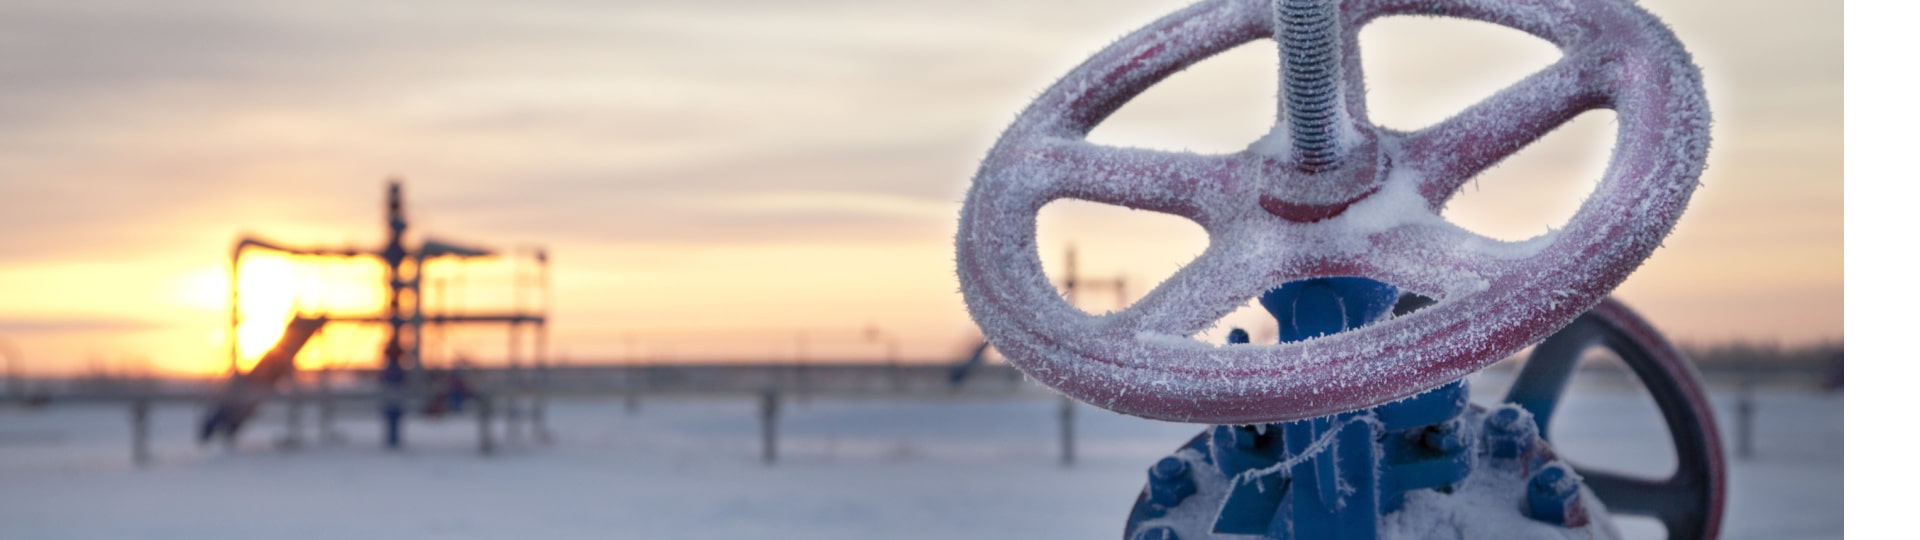 Gazprom dodal do Číny plynovodem Síla Sibiře rekordní množství plynu za den